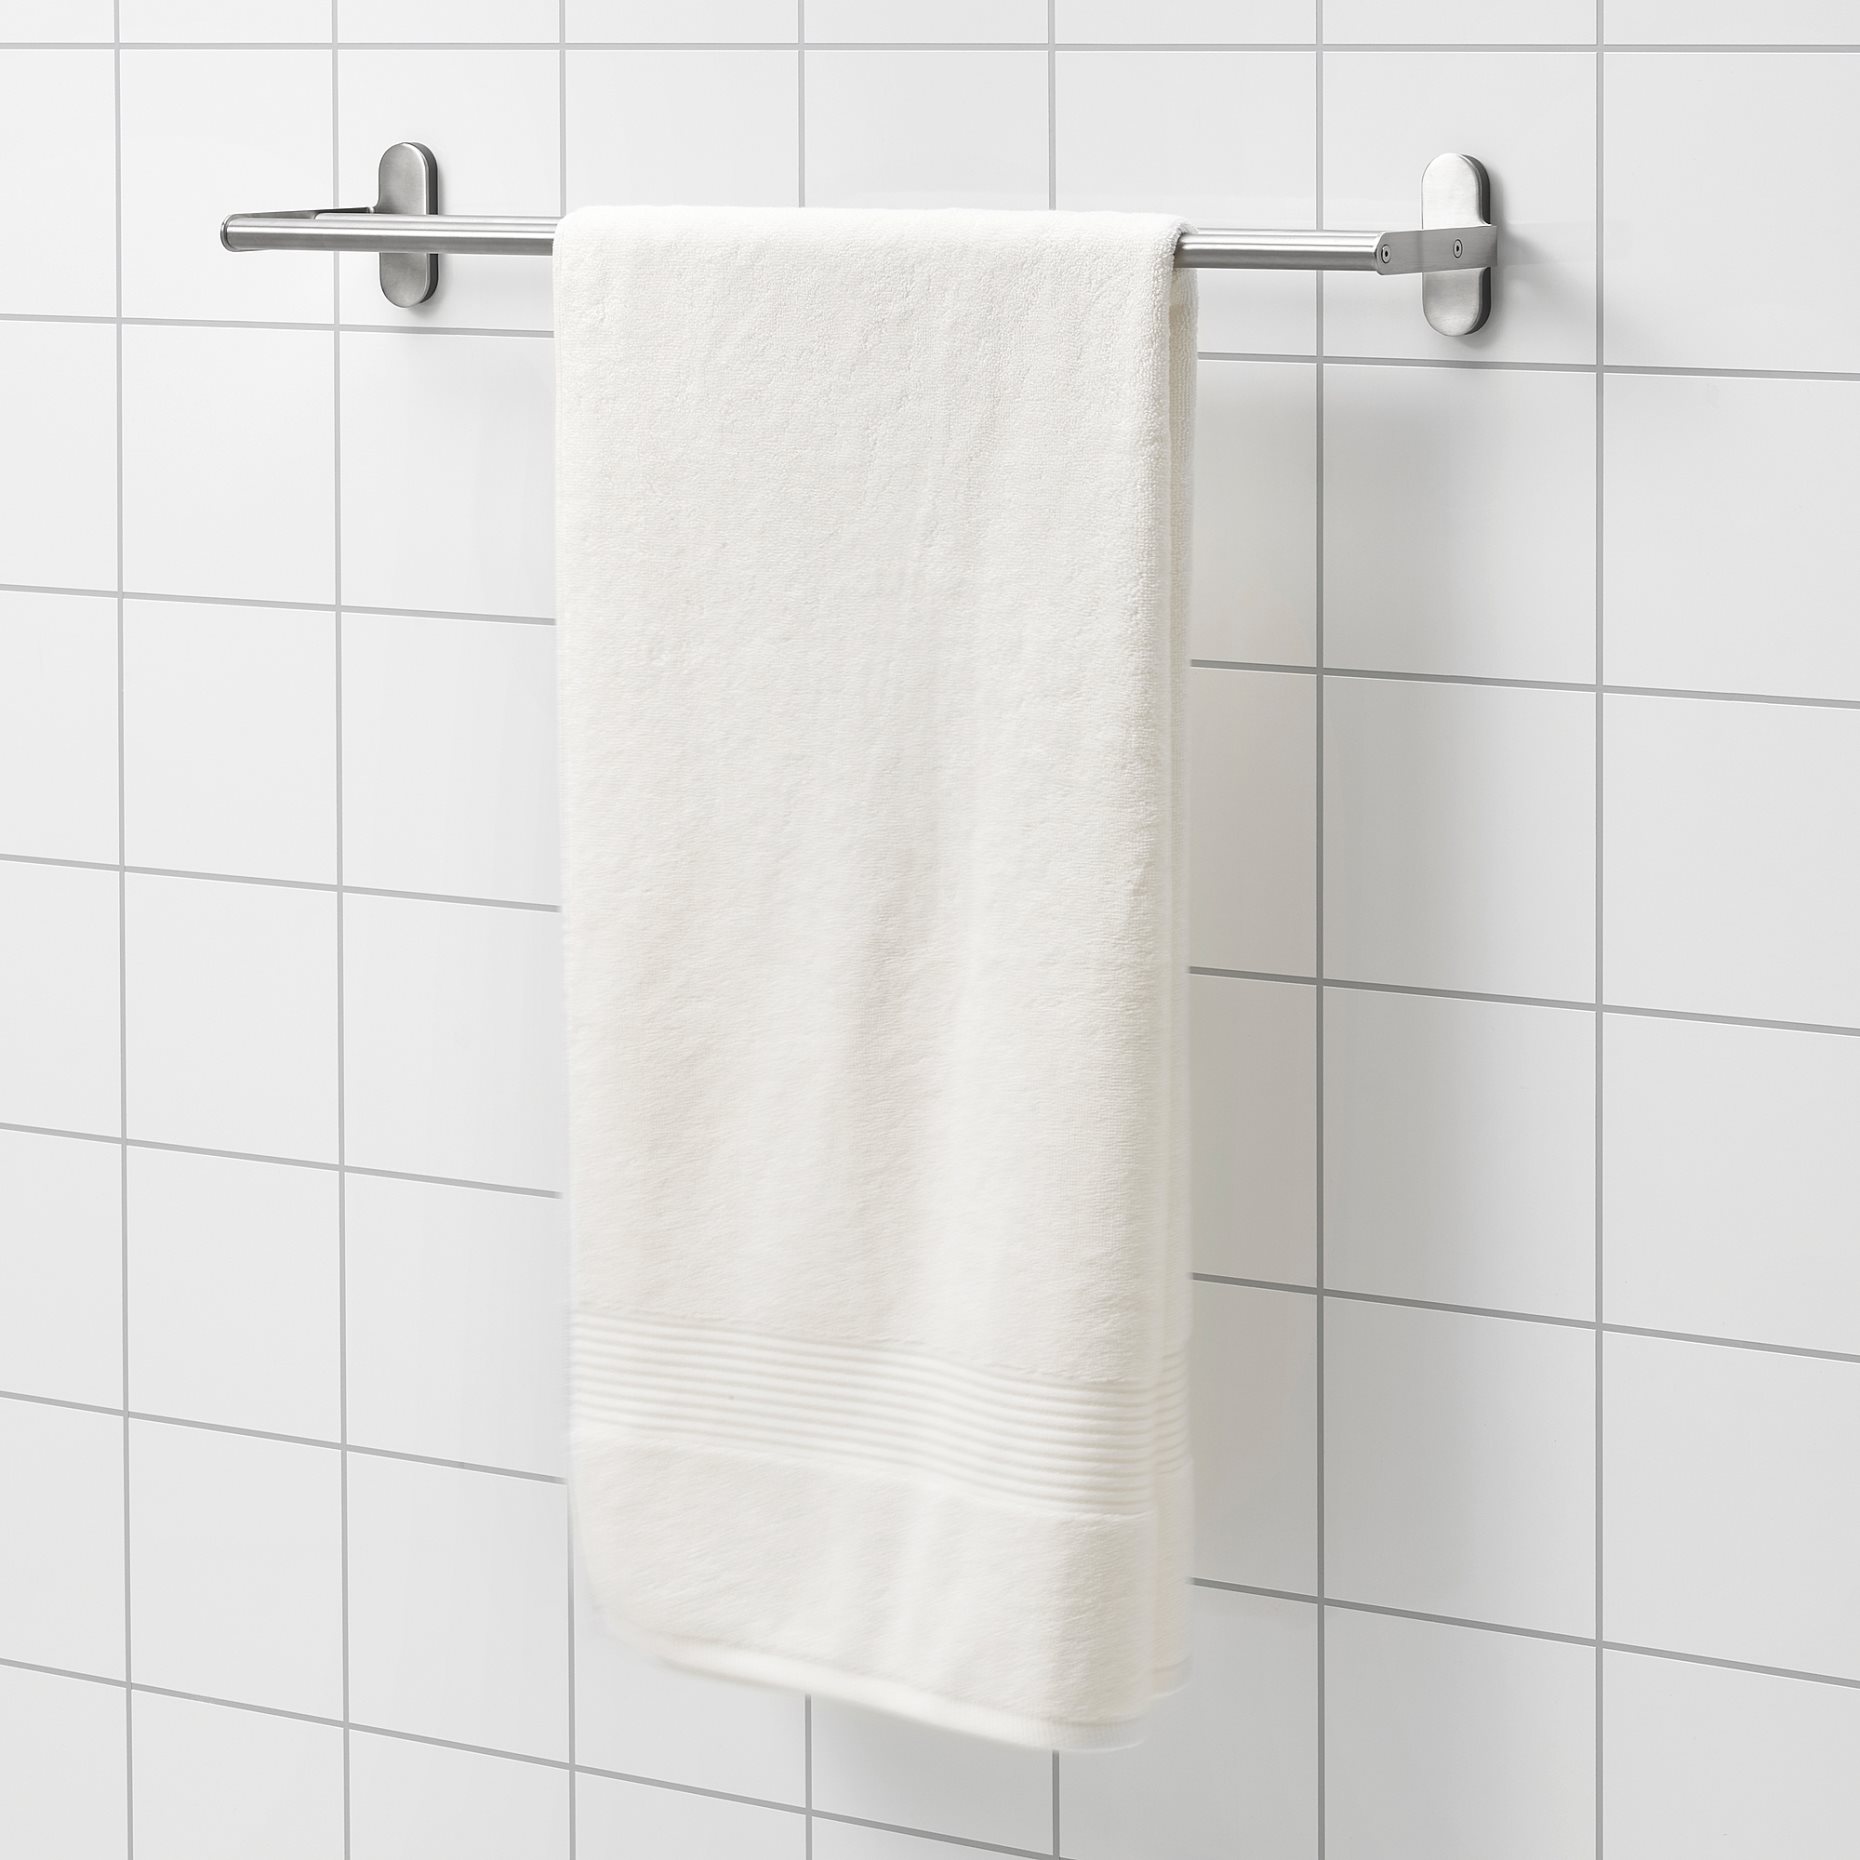 FREDRIKSJÖN, πετσέτα μπάνιου, 70x140 cm, 004.967.17